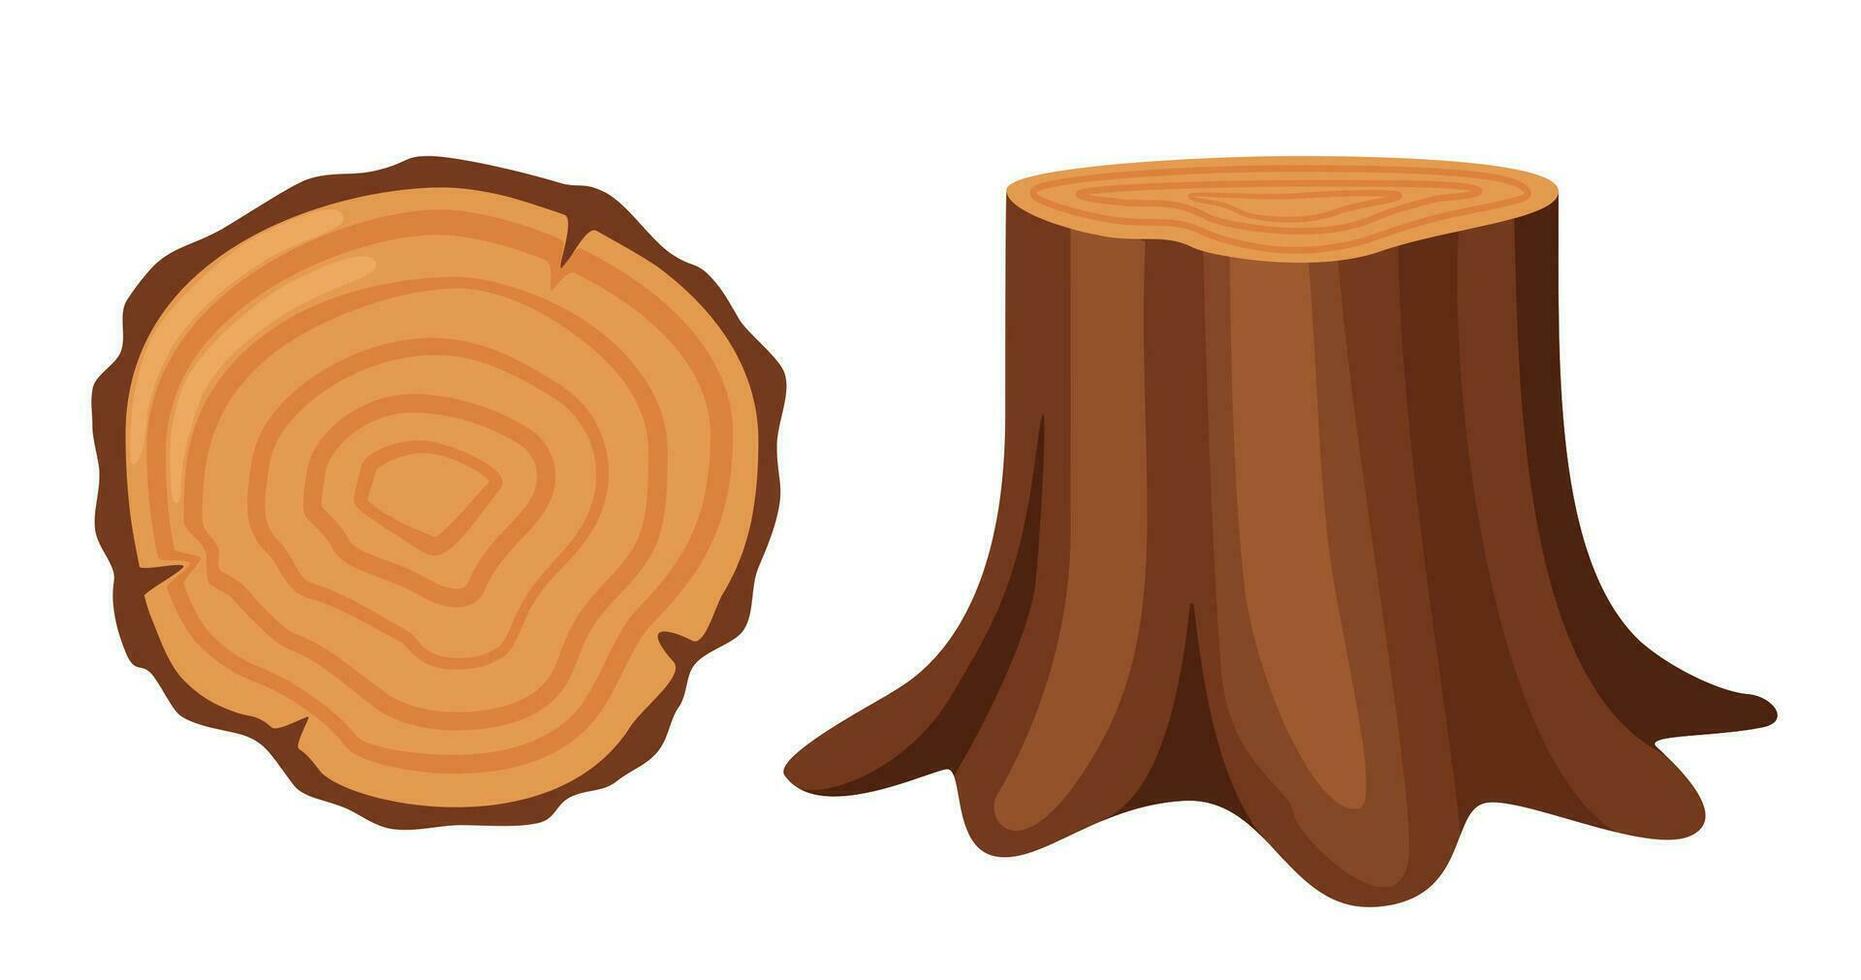 träd stubbe, sida och topp se. skogsbruk och virke industri. vektor illustration.